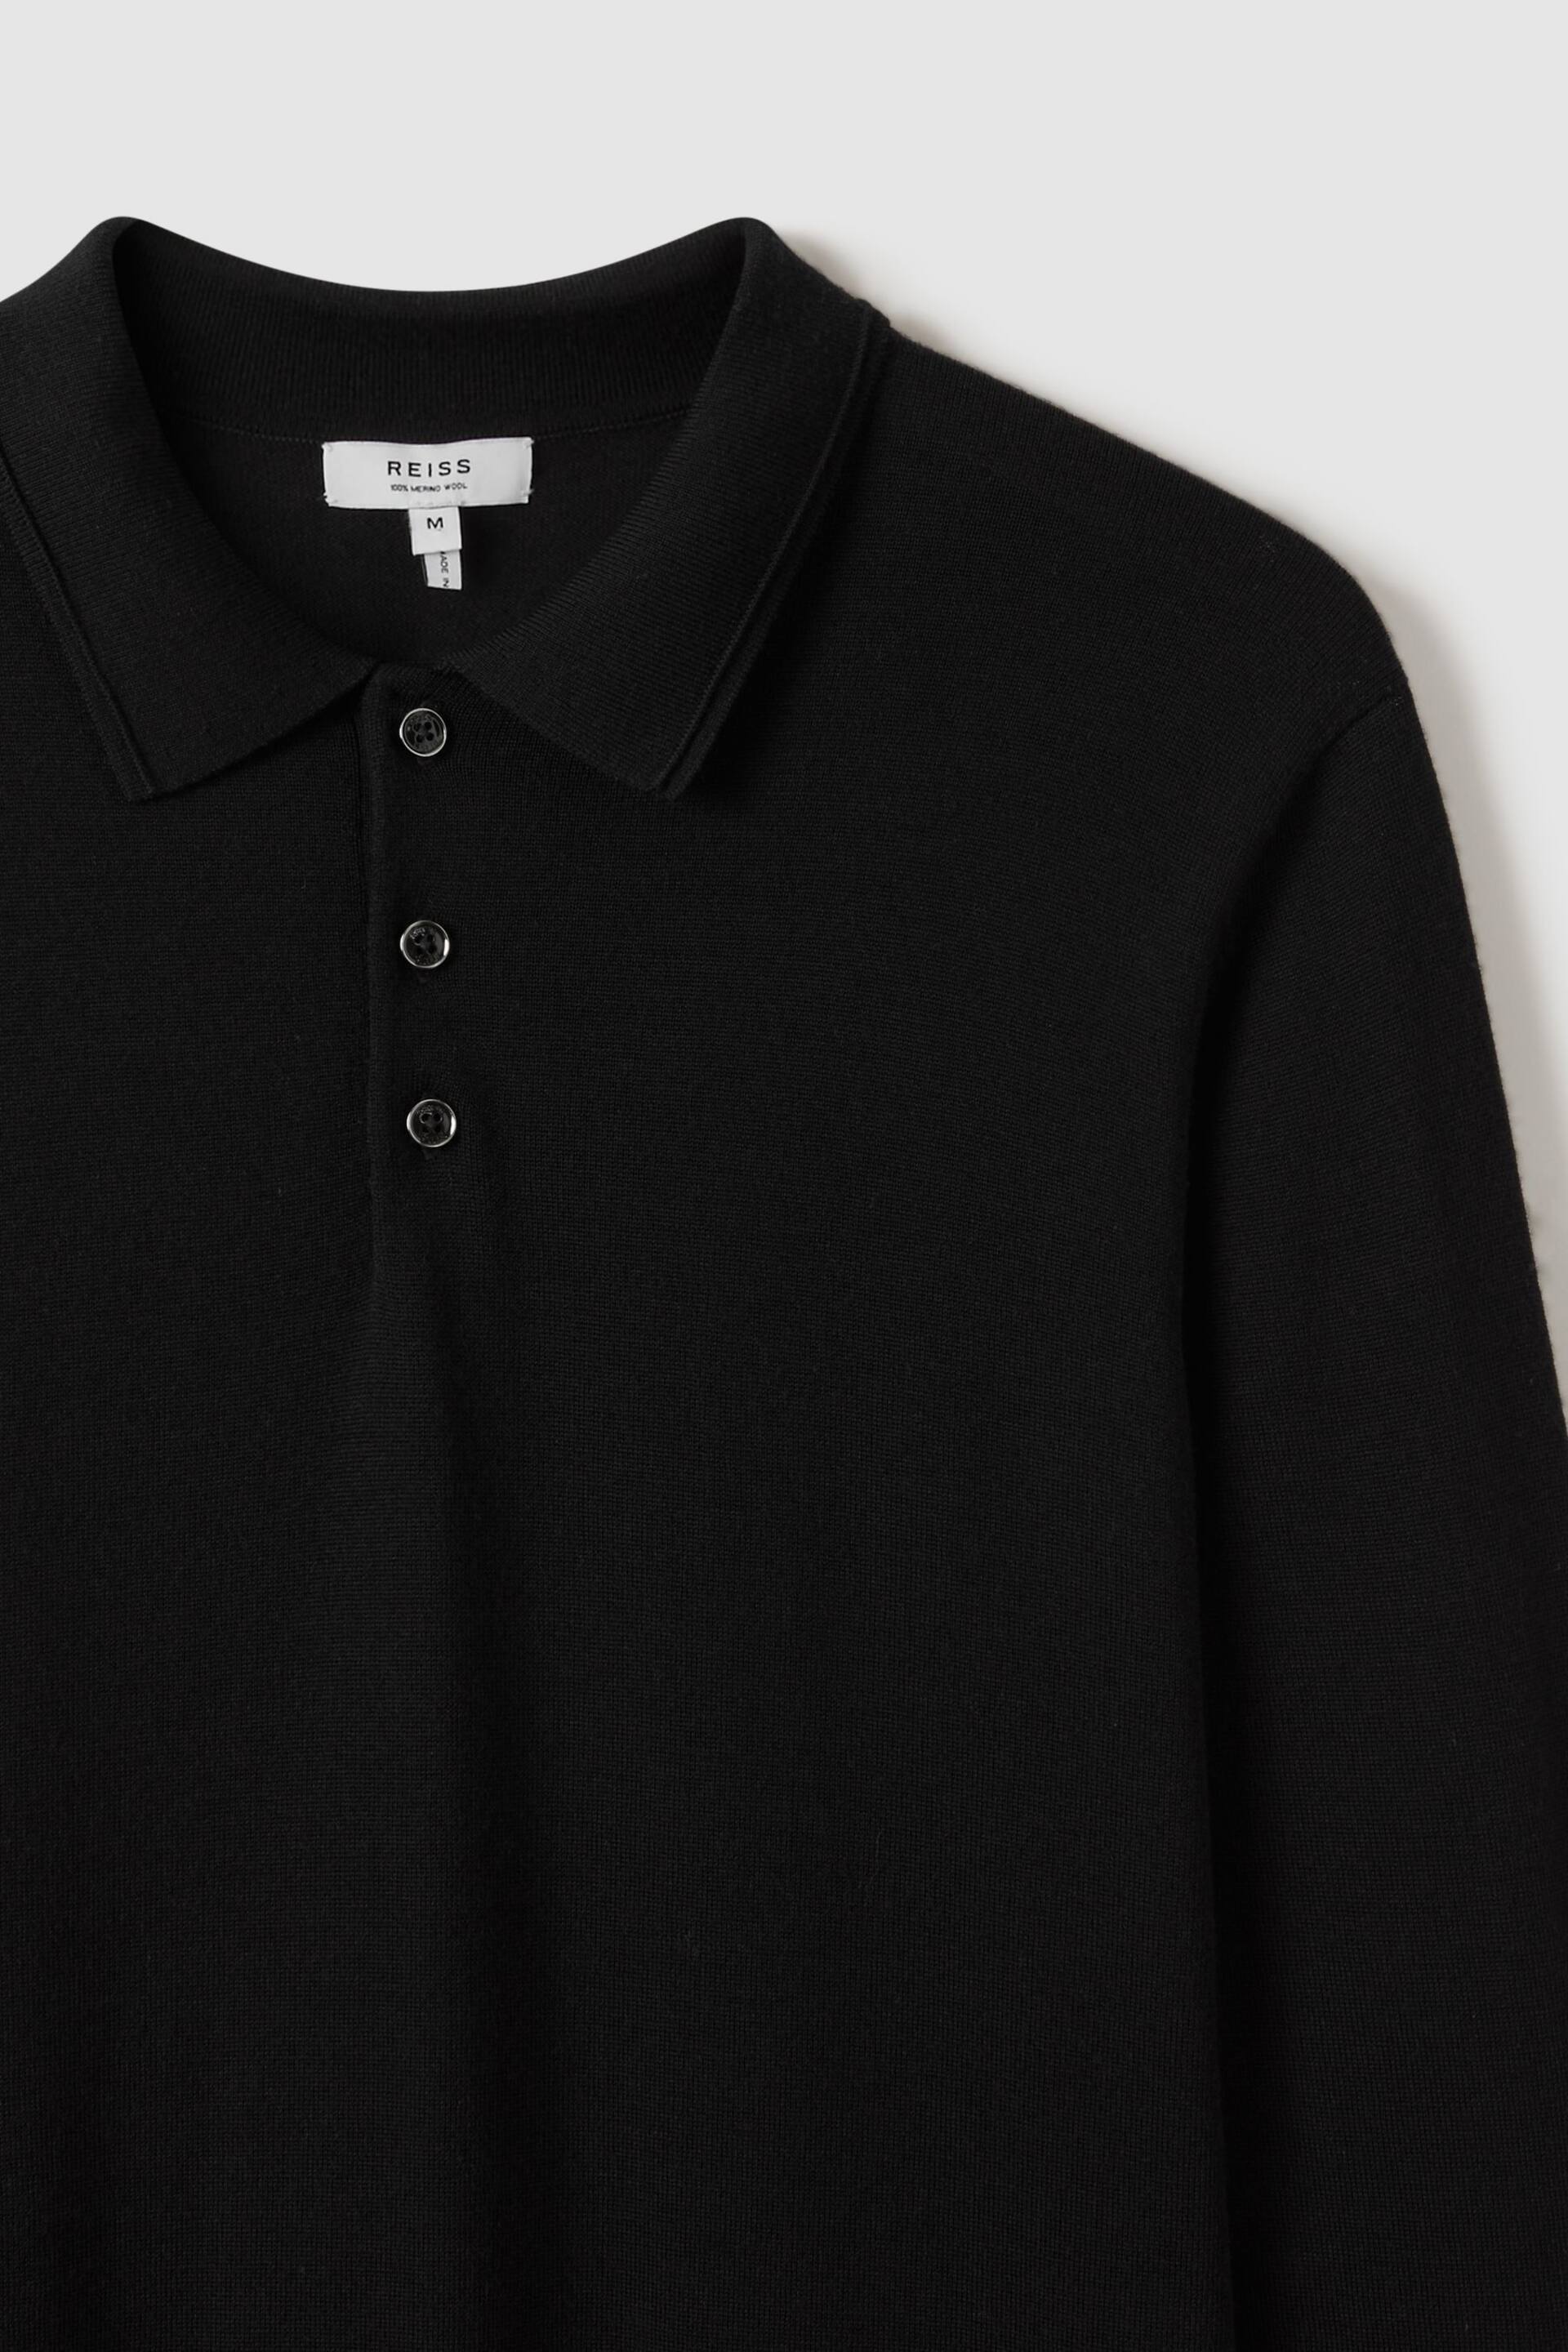 Reiss Black Trafford Merino Wool Polo Shirt - Image 5 of 7